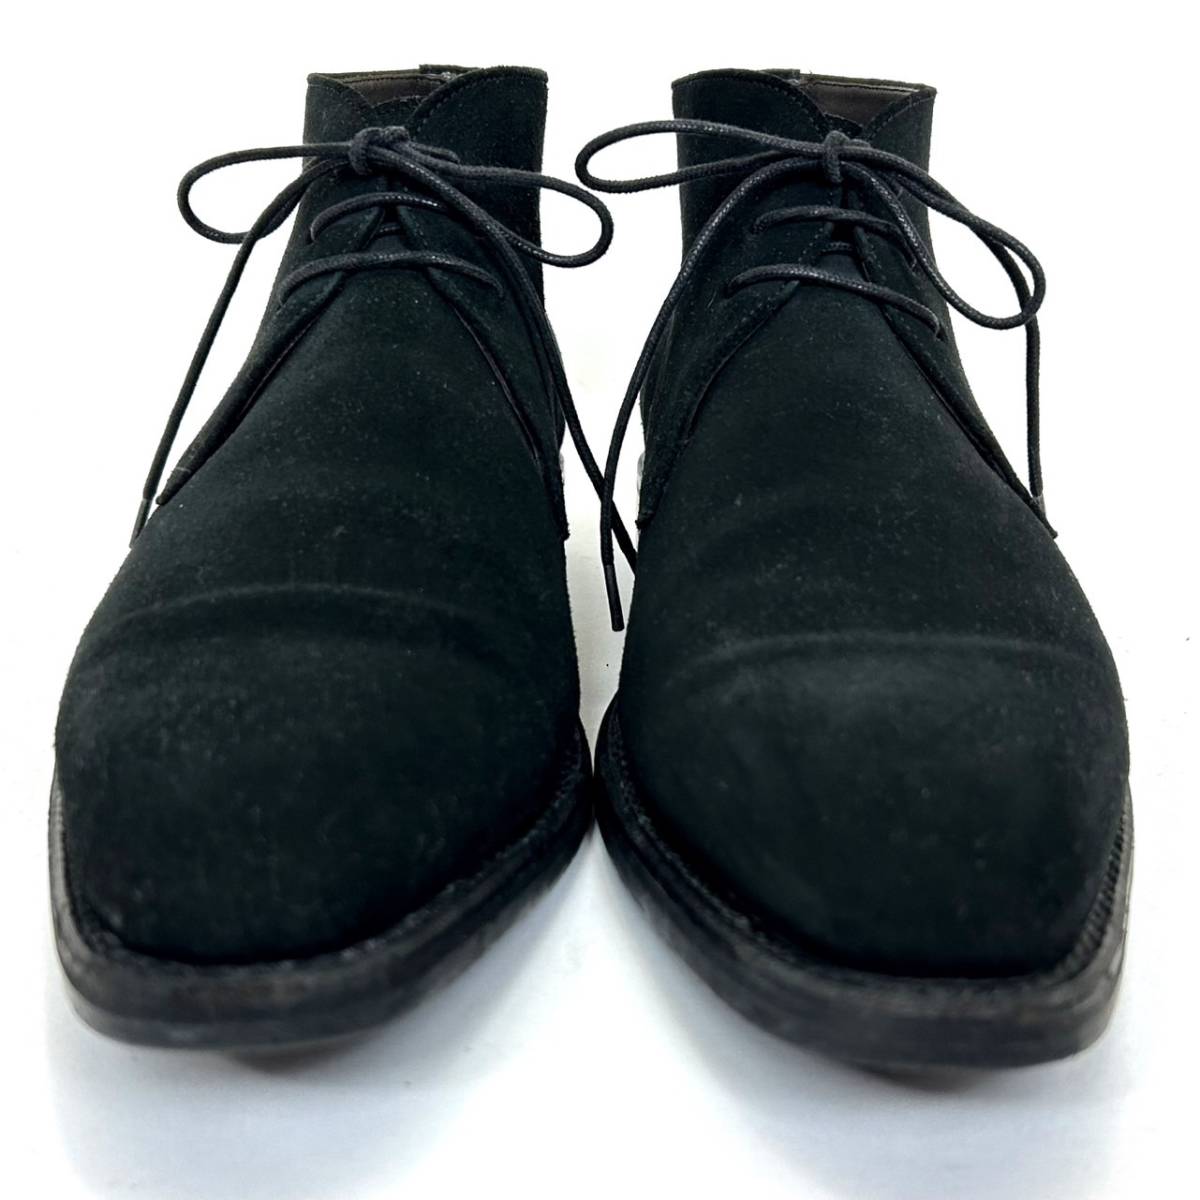 即決 Berwick バーウィック メンズ 6.5 25cm程度 スエード 本革 レザー チャッカブーツ 黒色 ブラック ビジネス ドレスシューズ 革靴 中古